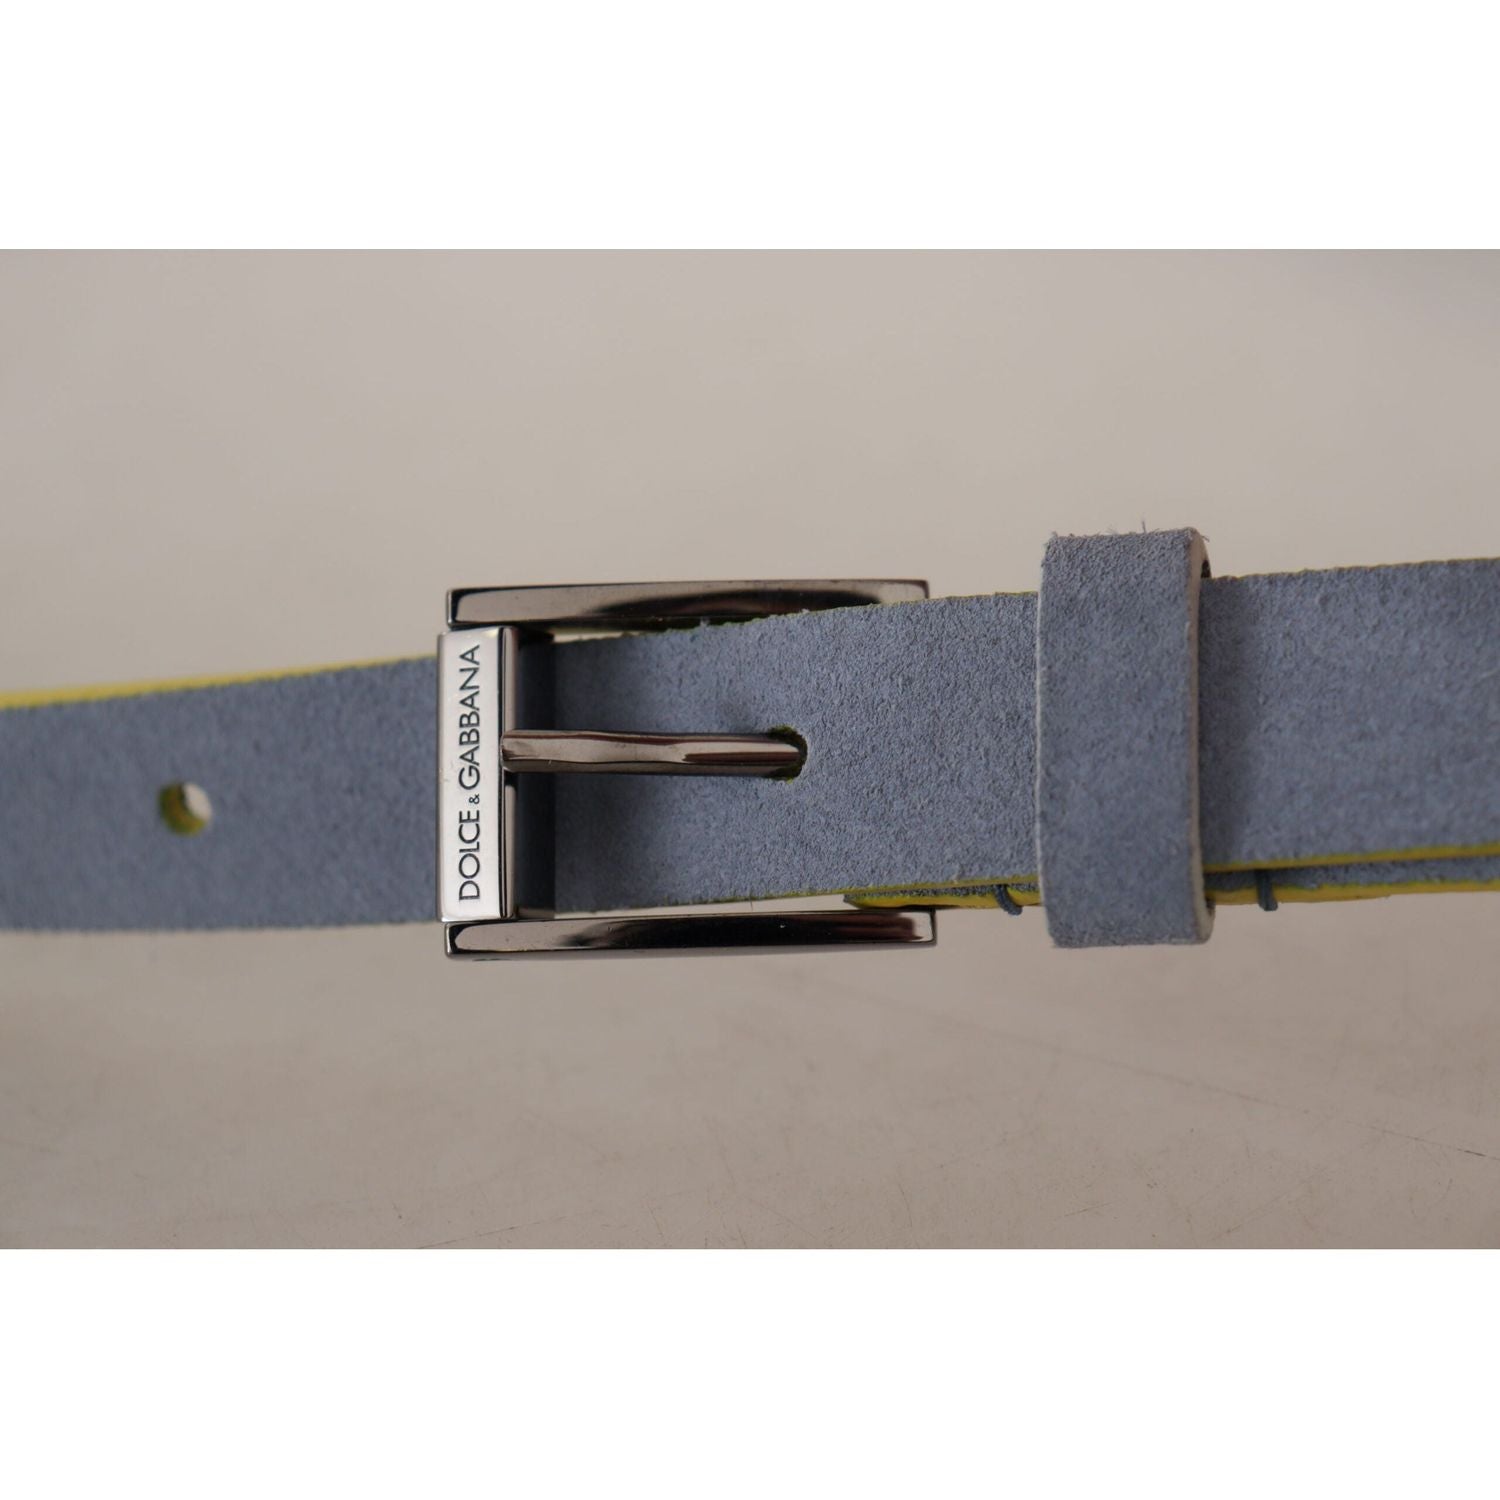 Dolce & Gabbana | Blue Suede Leather Logo Engraved Buckle Belt - McRichard Designer Brands